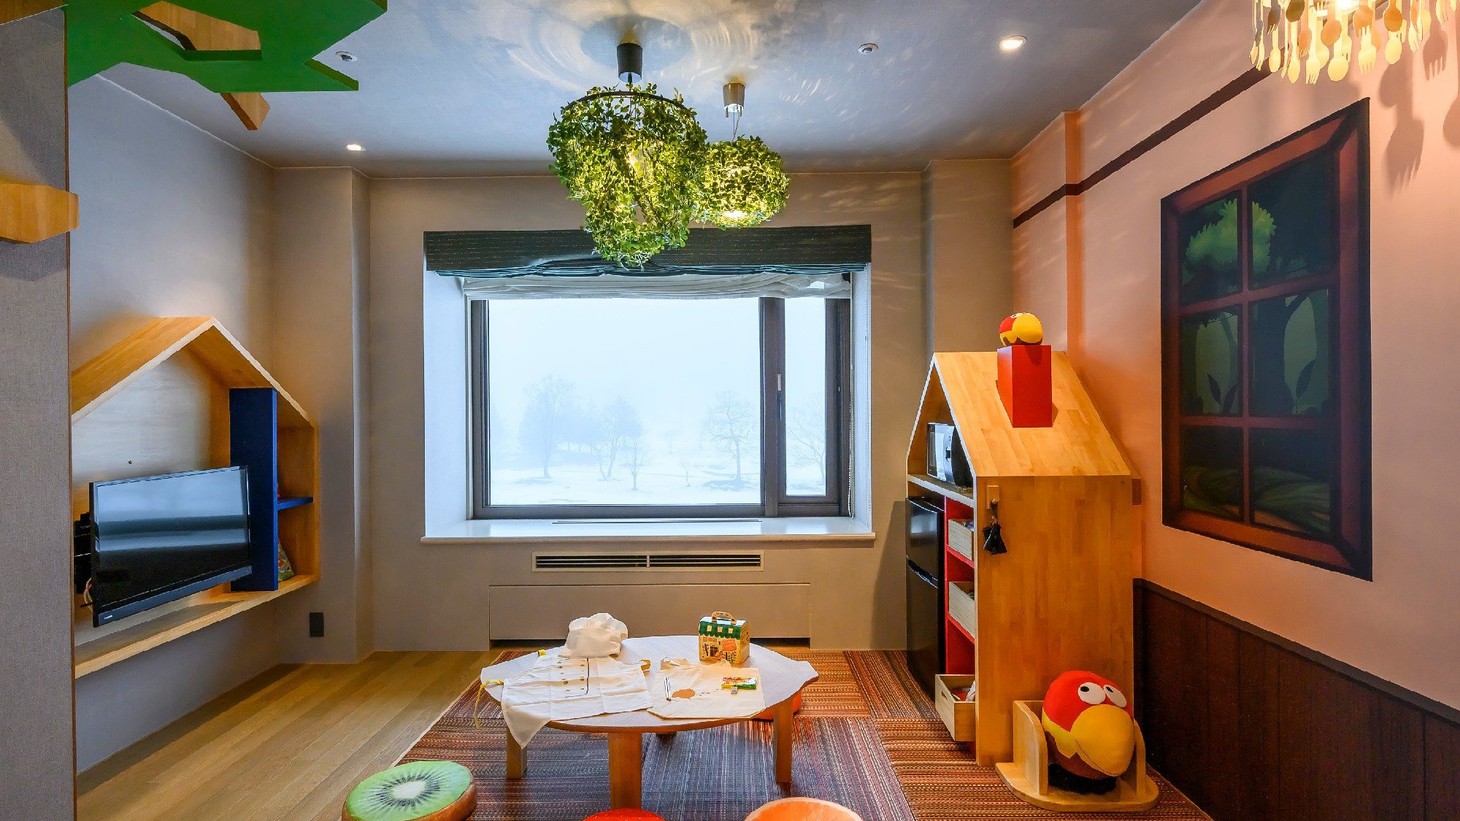 【キョロちゃんルーム「森のお菓子屋さん」】森永製菓とコラボレーションした体験型客室